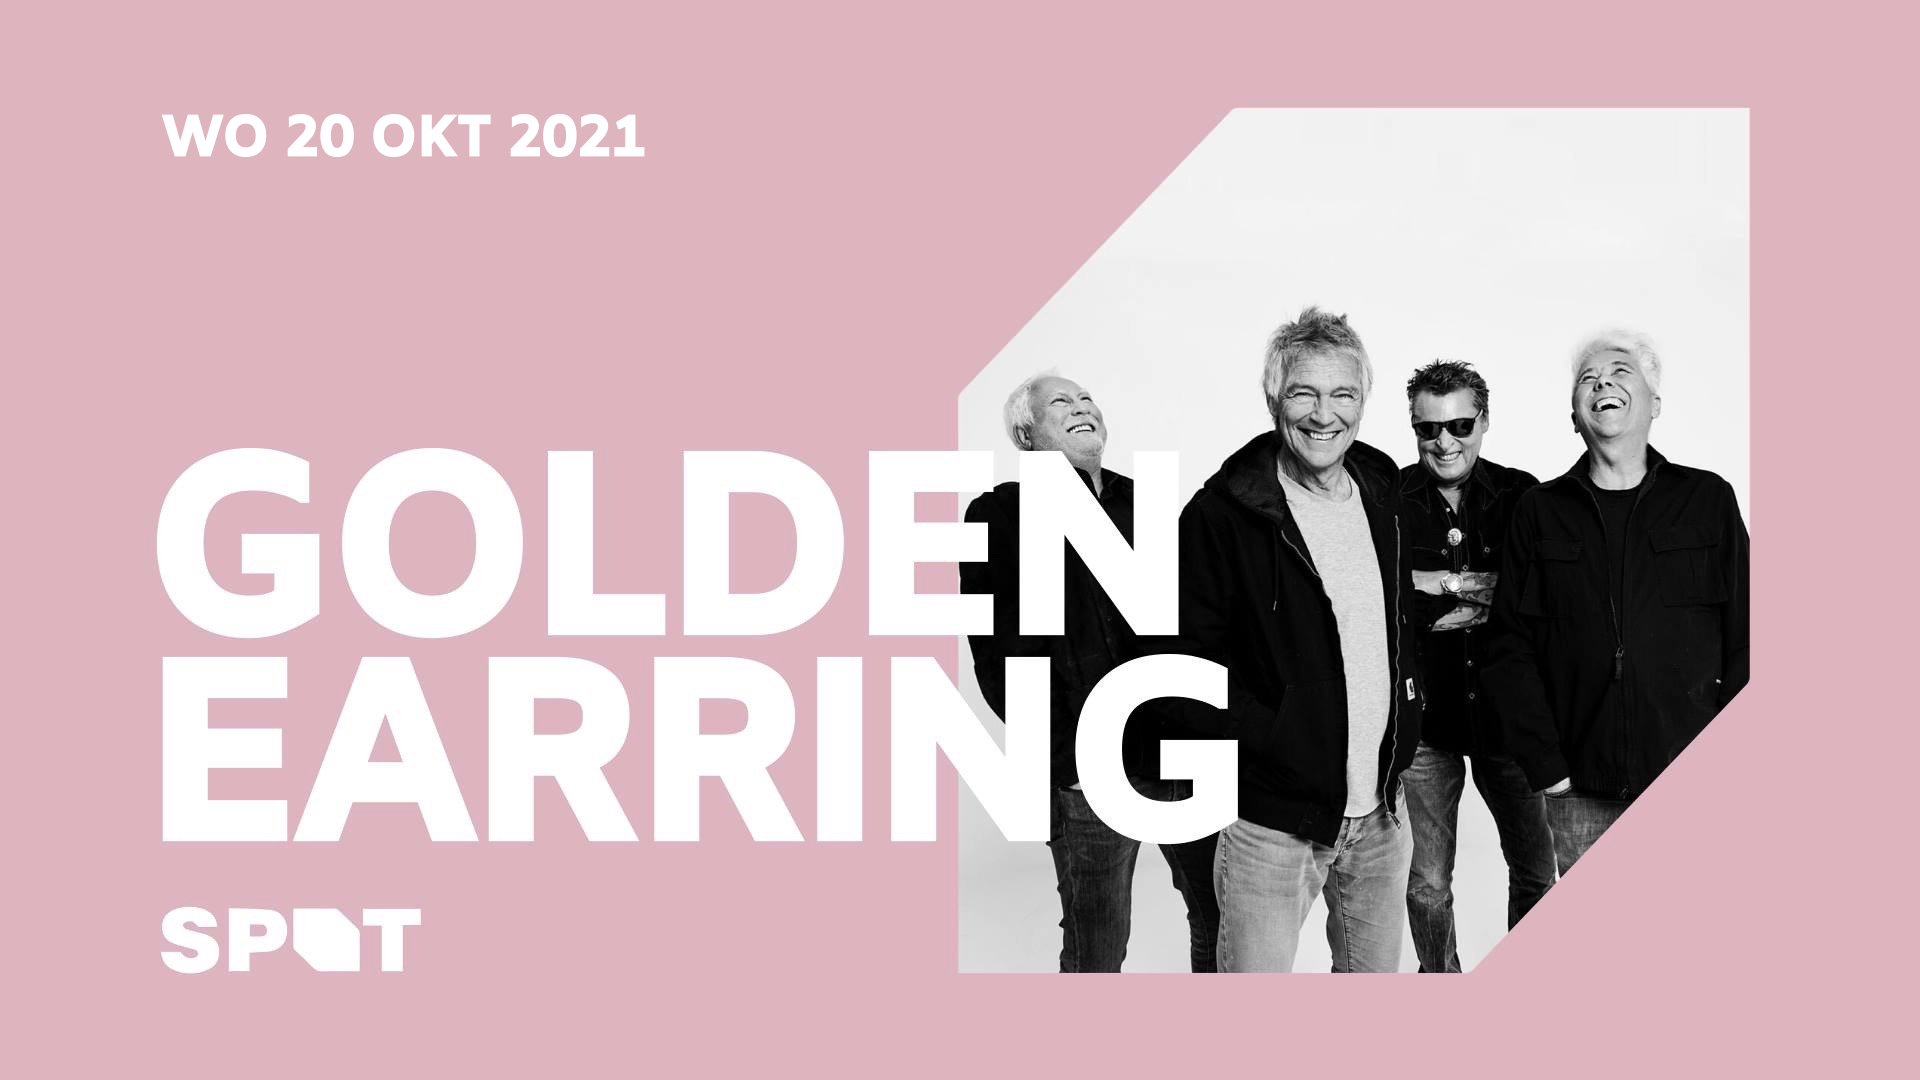 Golden Earring show ad October 20 2021 Groningen - SPOT